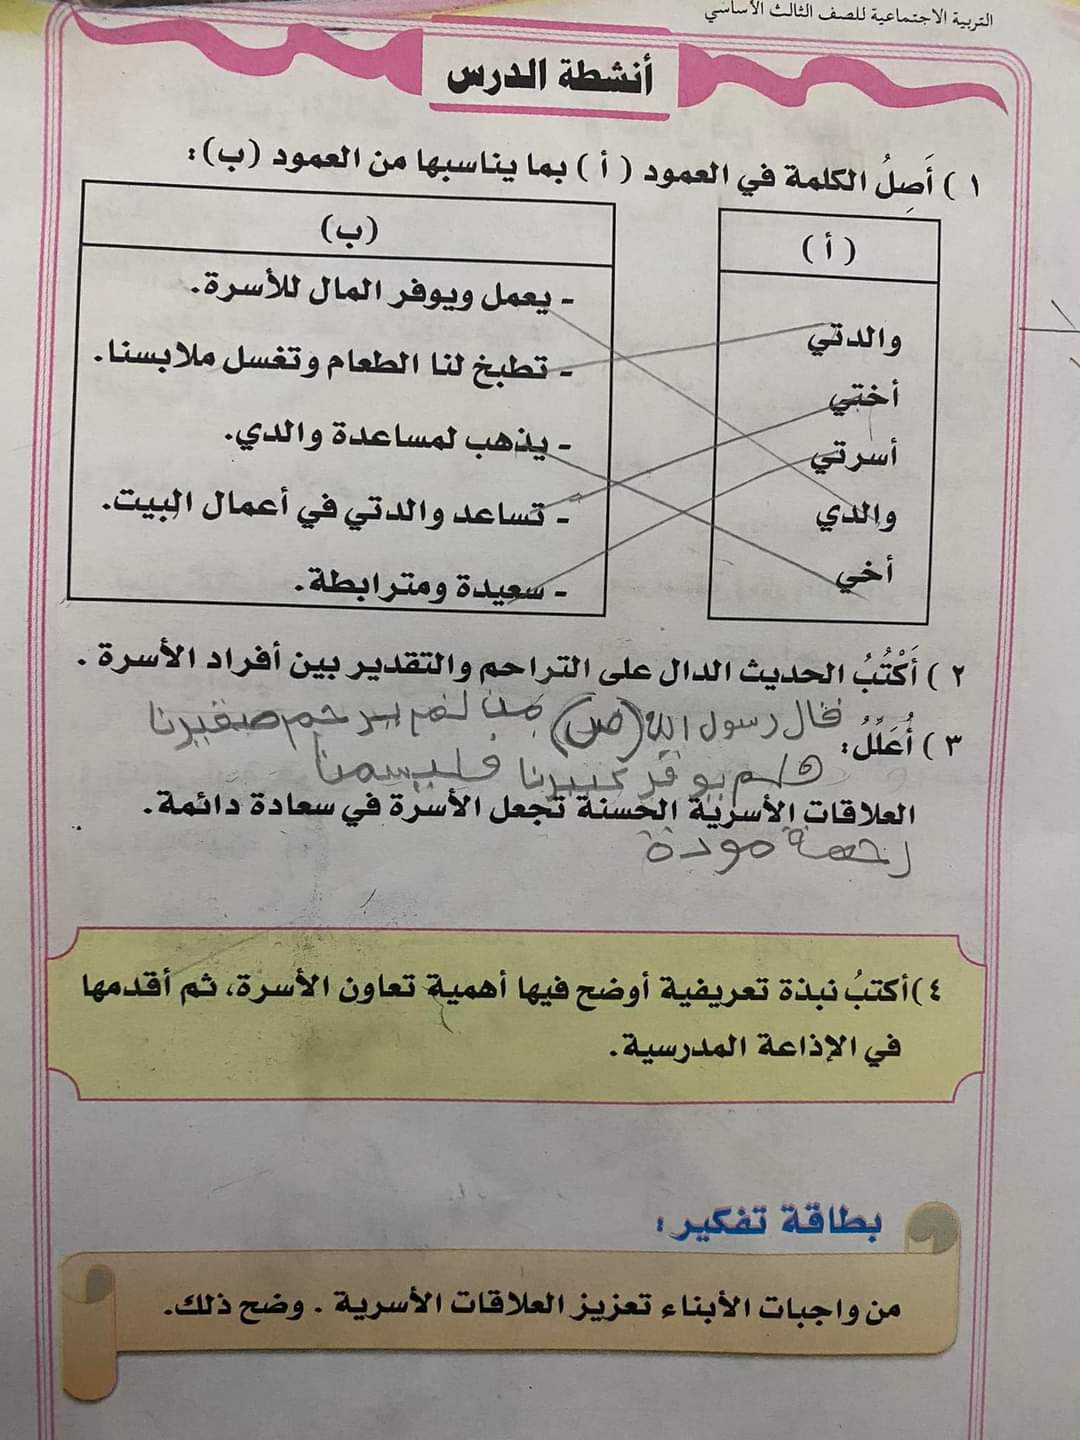 الشيخ حسين حازب يبعث رسالة هامة جدا لحكومة صنعاء بخصوص الطلاب  ...